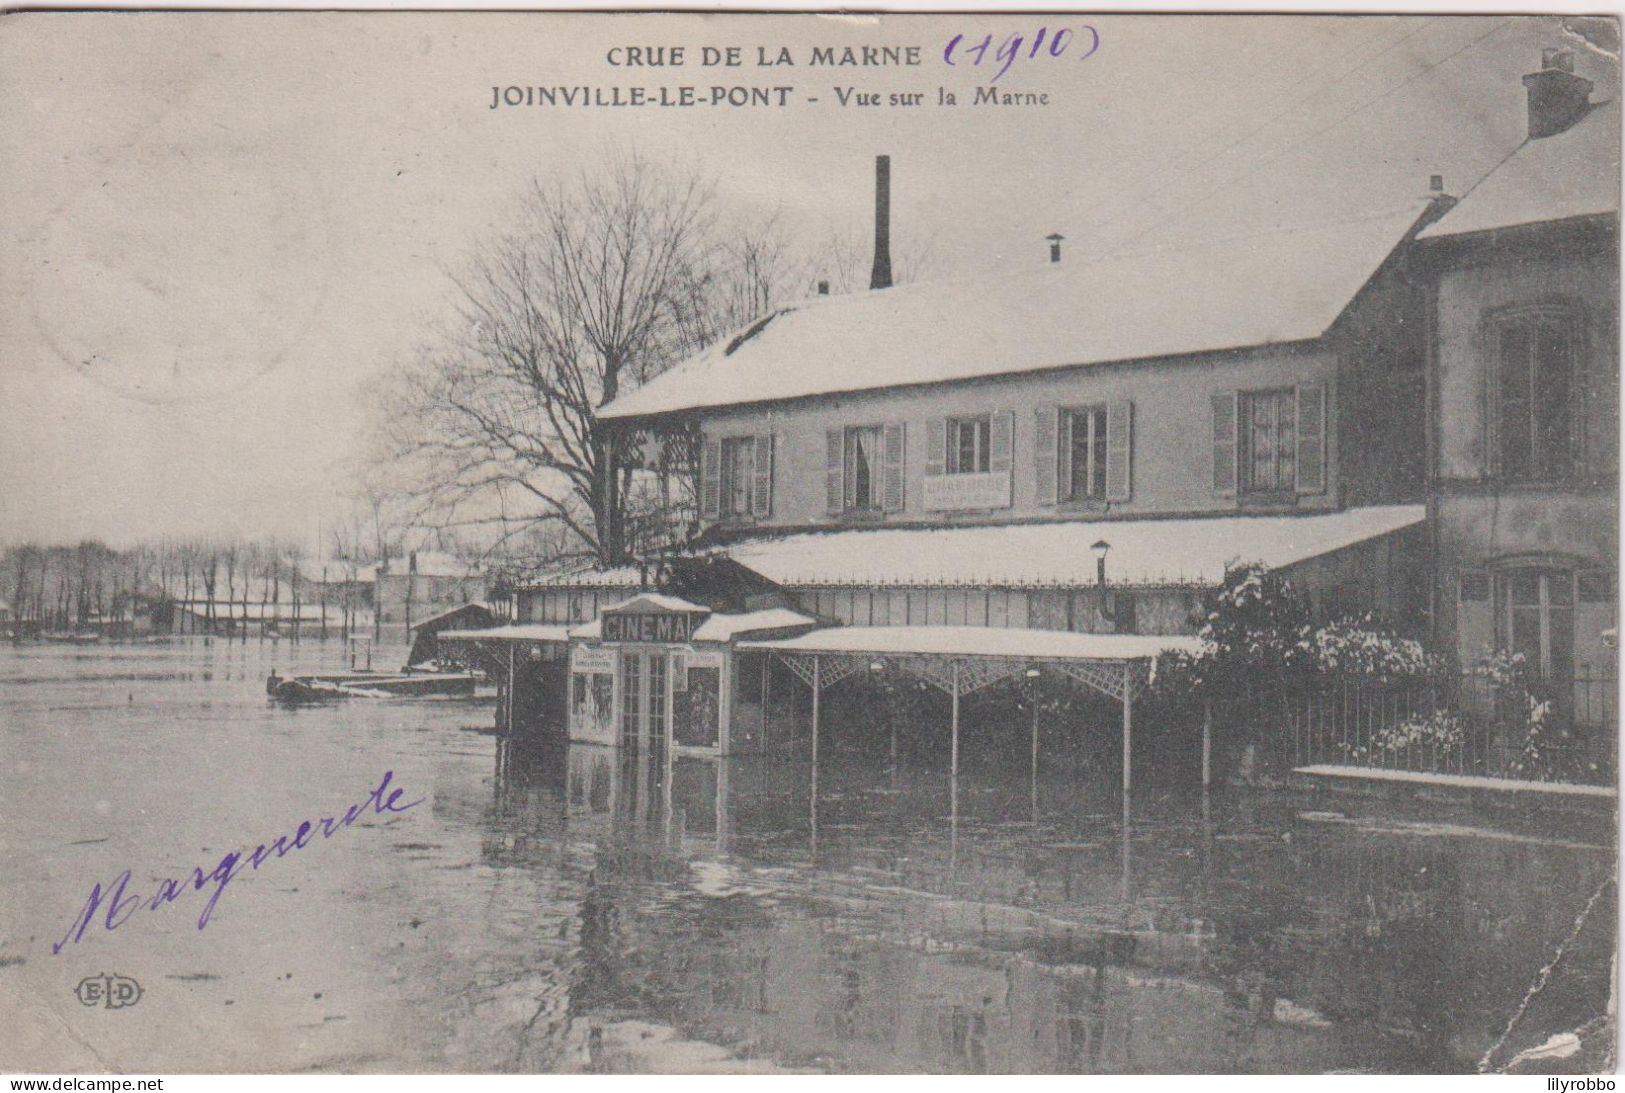 FRANCE - PARIS - Crue De La Seine 1910  Joinville-le-Pont Vue Sur La Marne - Used 1910 PM To UK - Floods